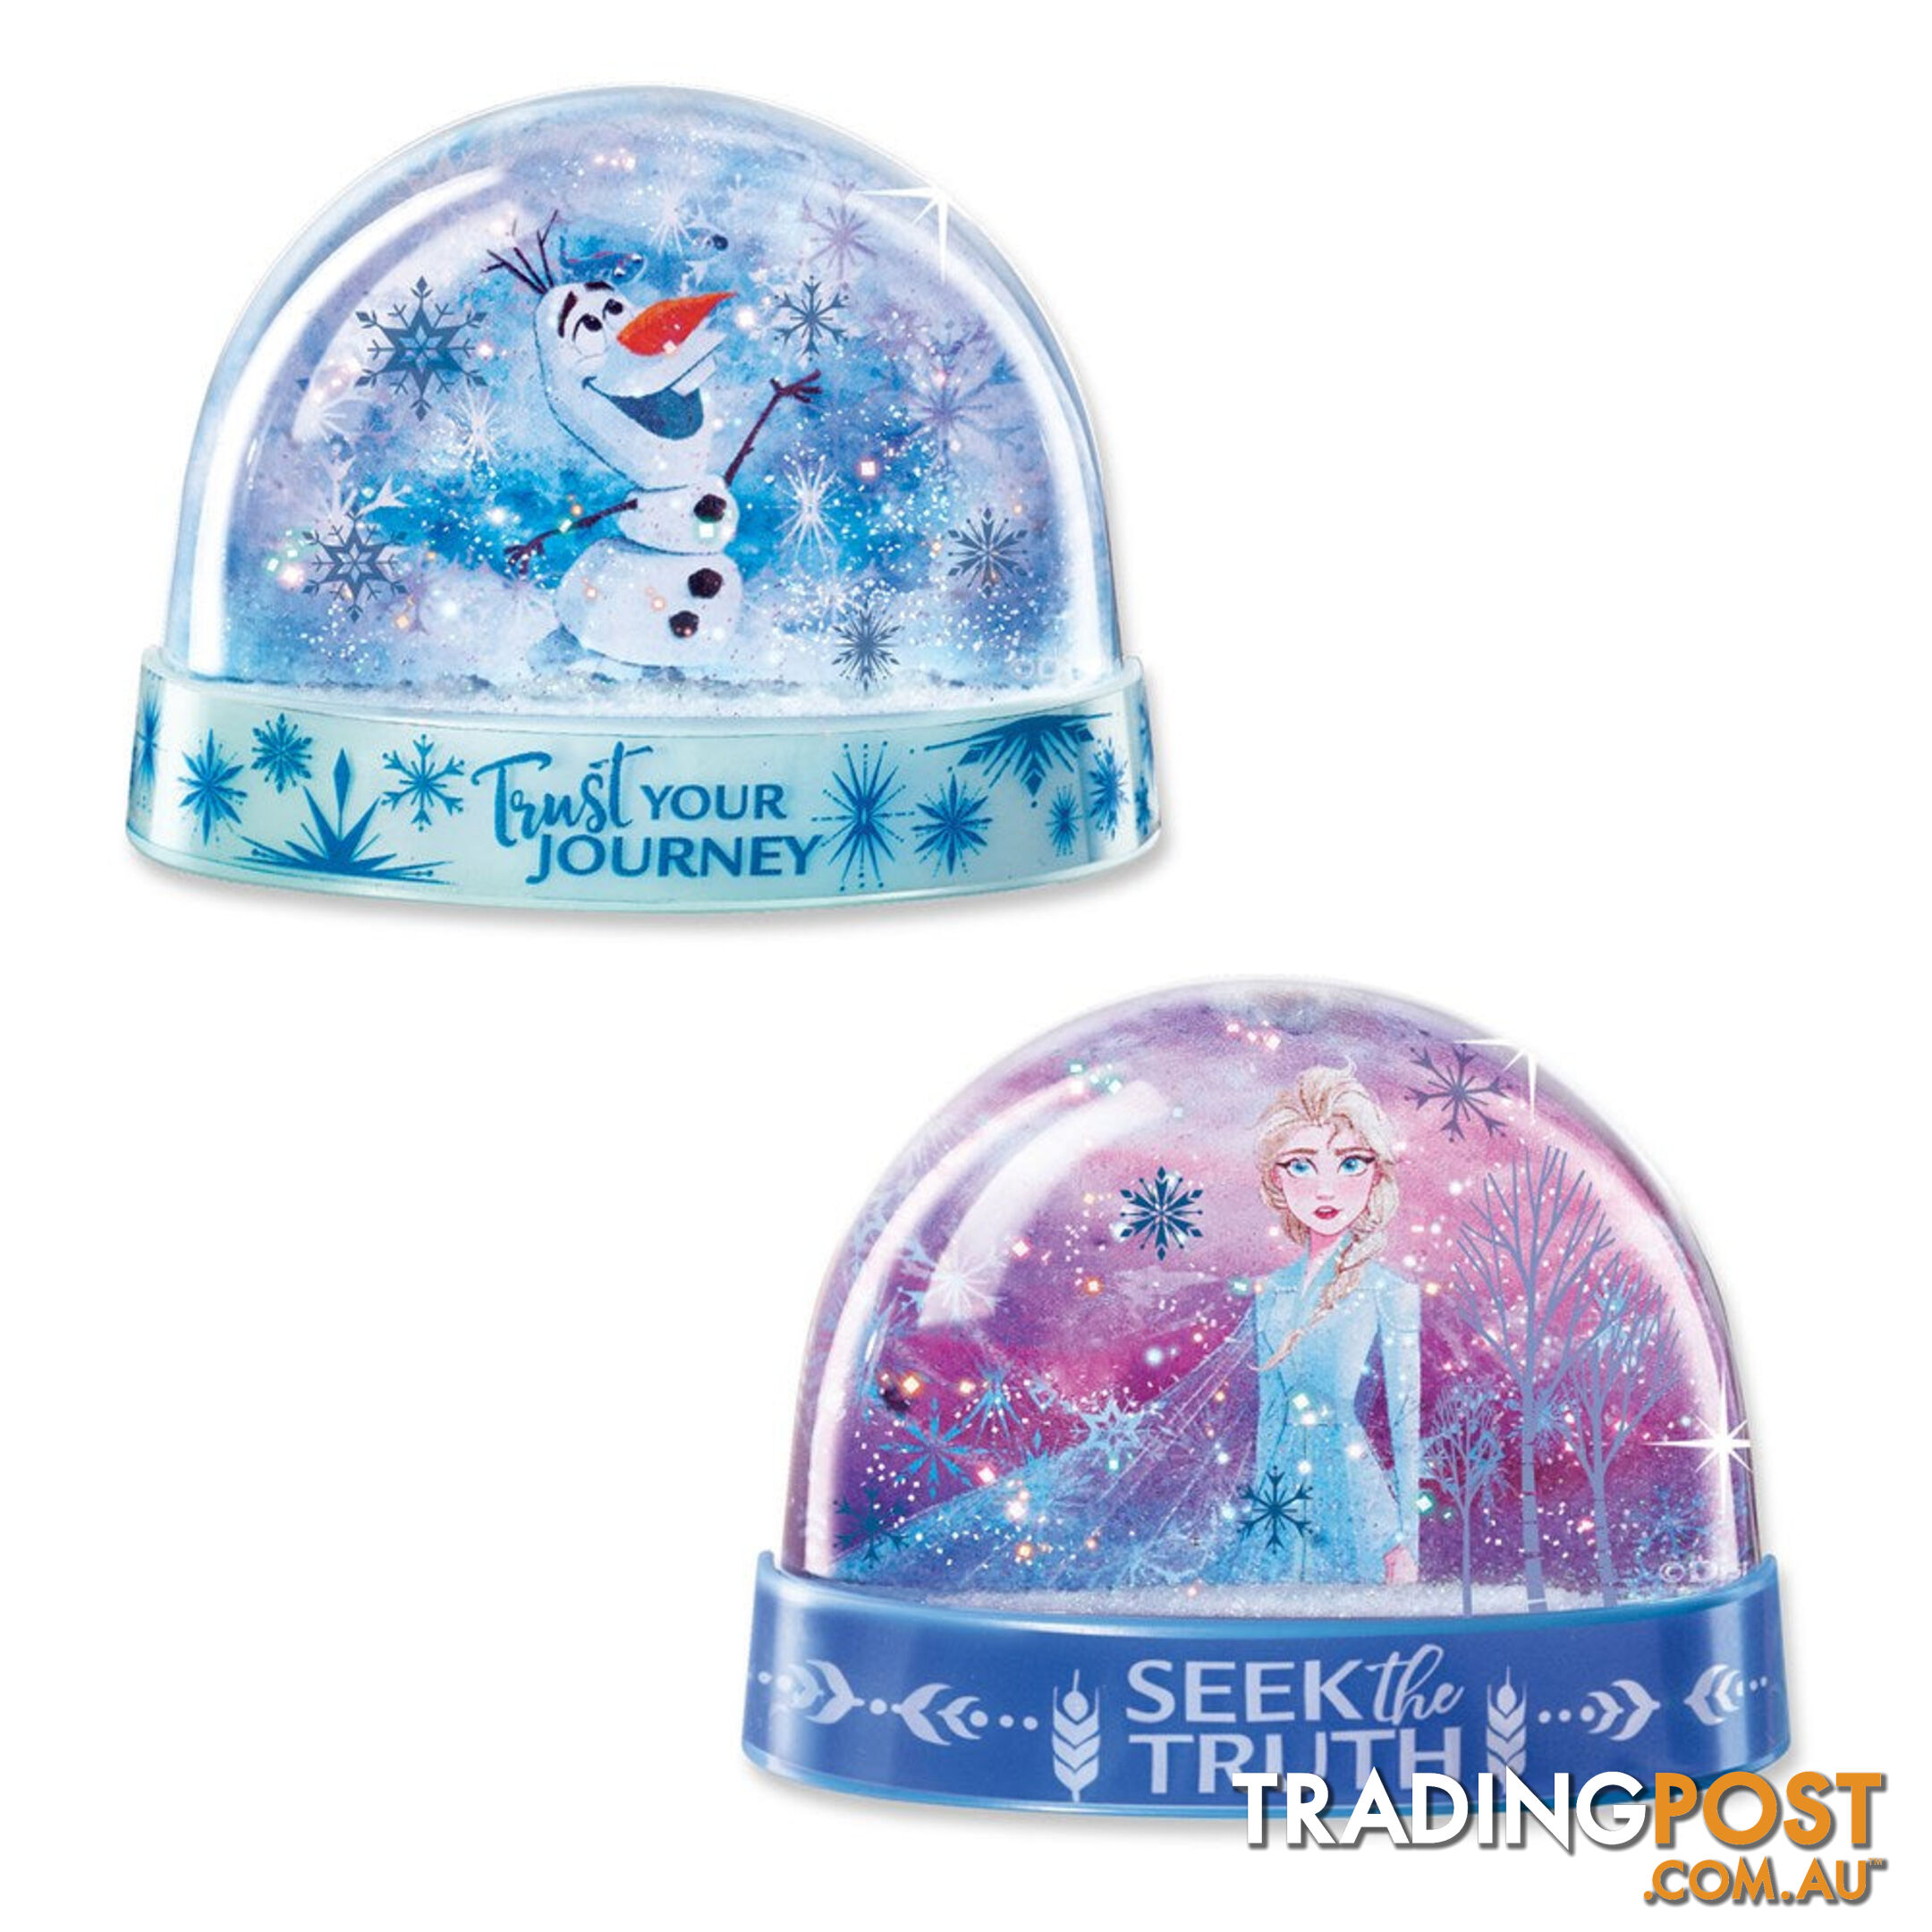 4m - Disney - Frozen - Snow Dome Jpfsg6235 - 4893156062352